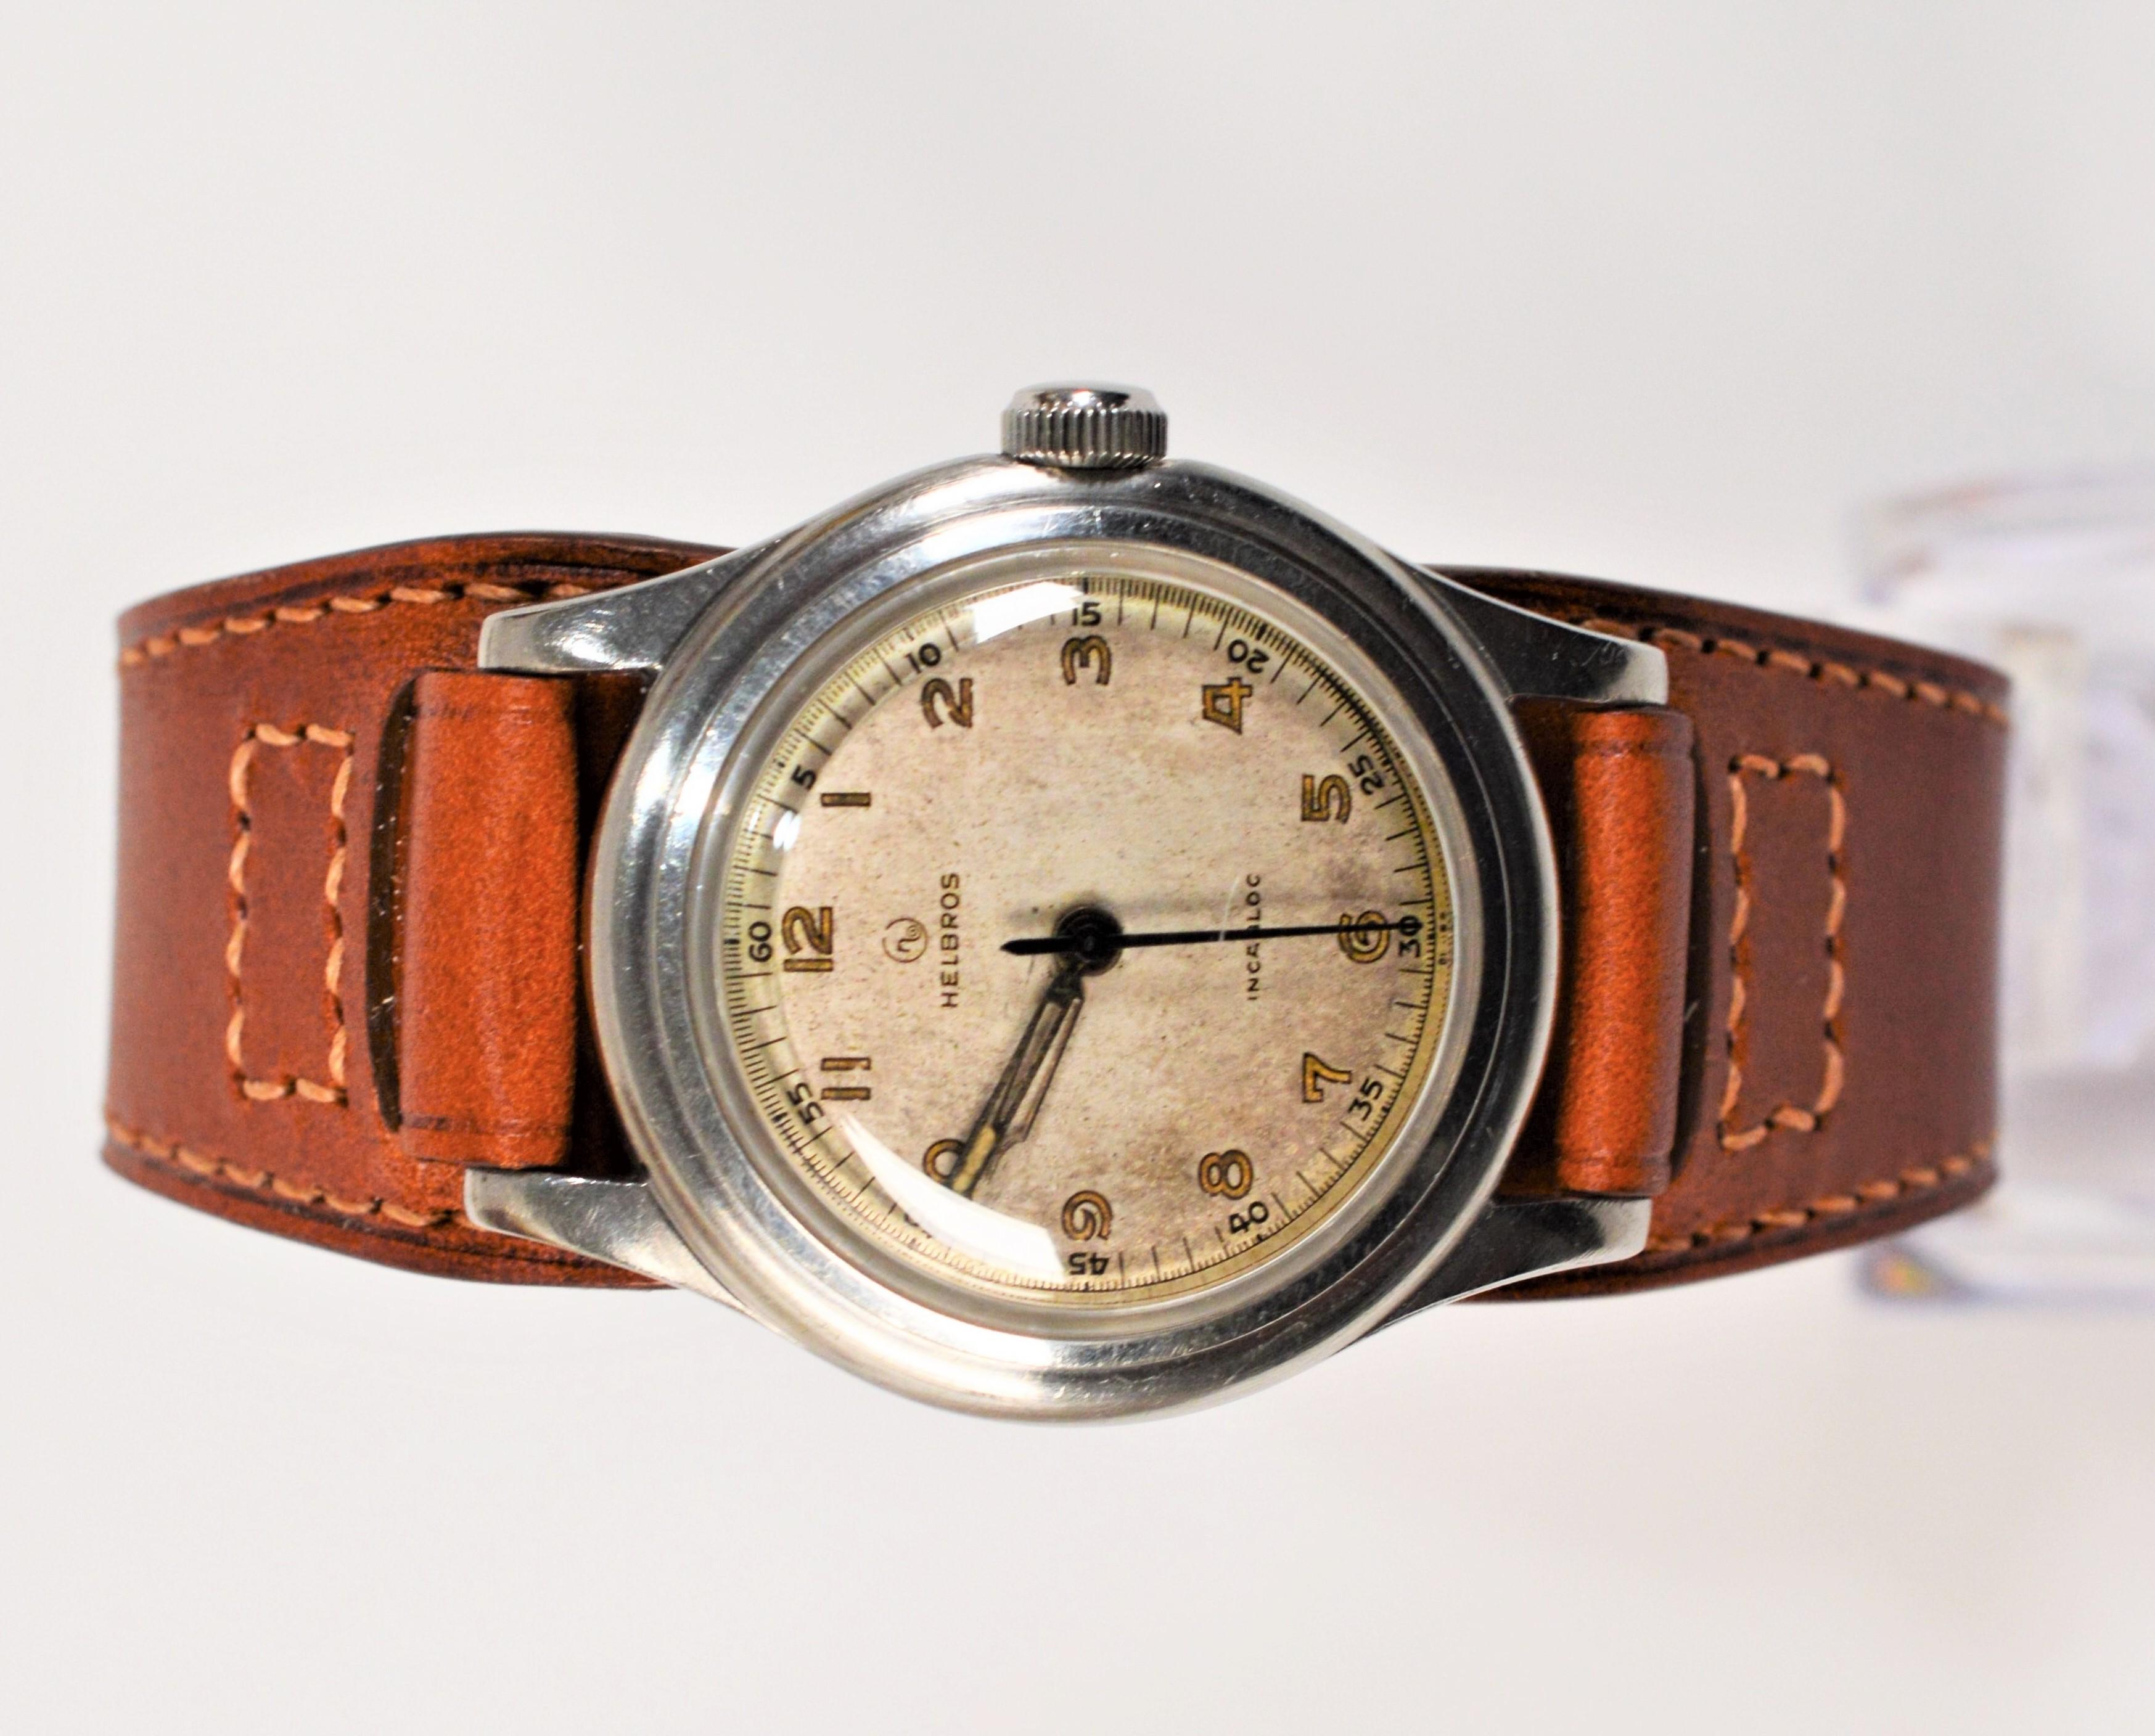 Diese Helbros-Armbanduhr mit 33-mm-Stahlgehäuse erinnert an die Ära des Zweiten Weltkriegs und vermittelt ein echtes Vintage-Gefühl. Handaufzug mit einem siebensteinigen Uhrwerk  Die Uhr befindet sich im Originalzustand und hat viel Charakter. Ein